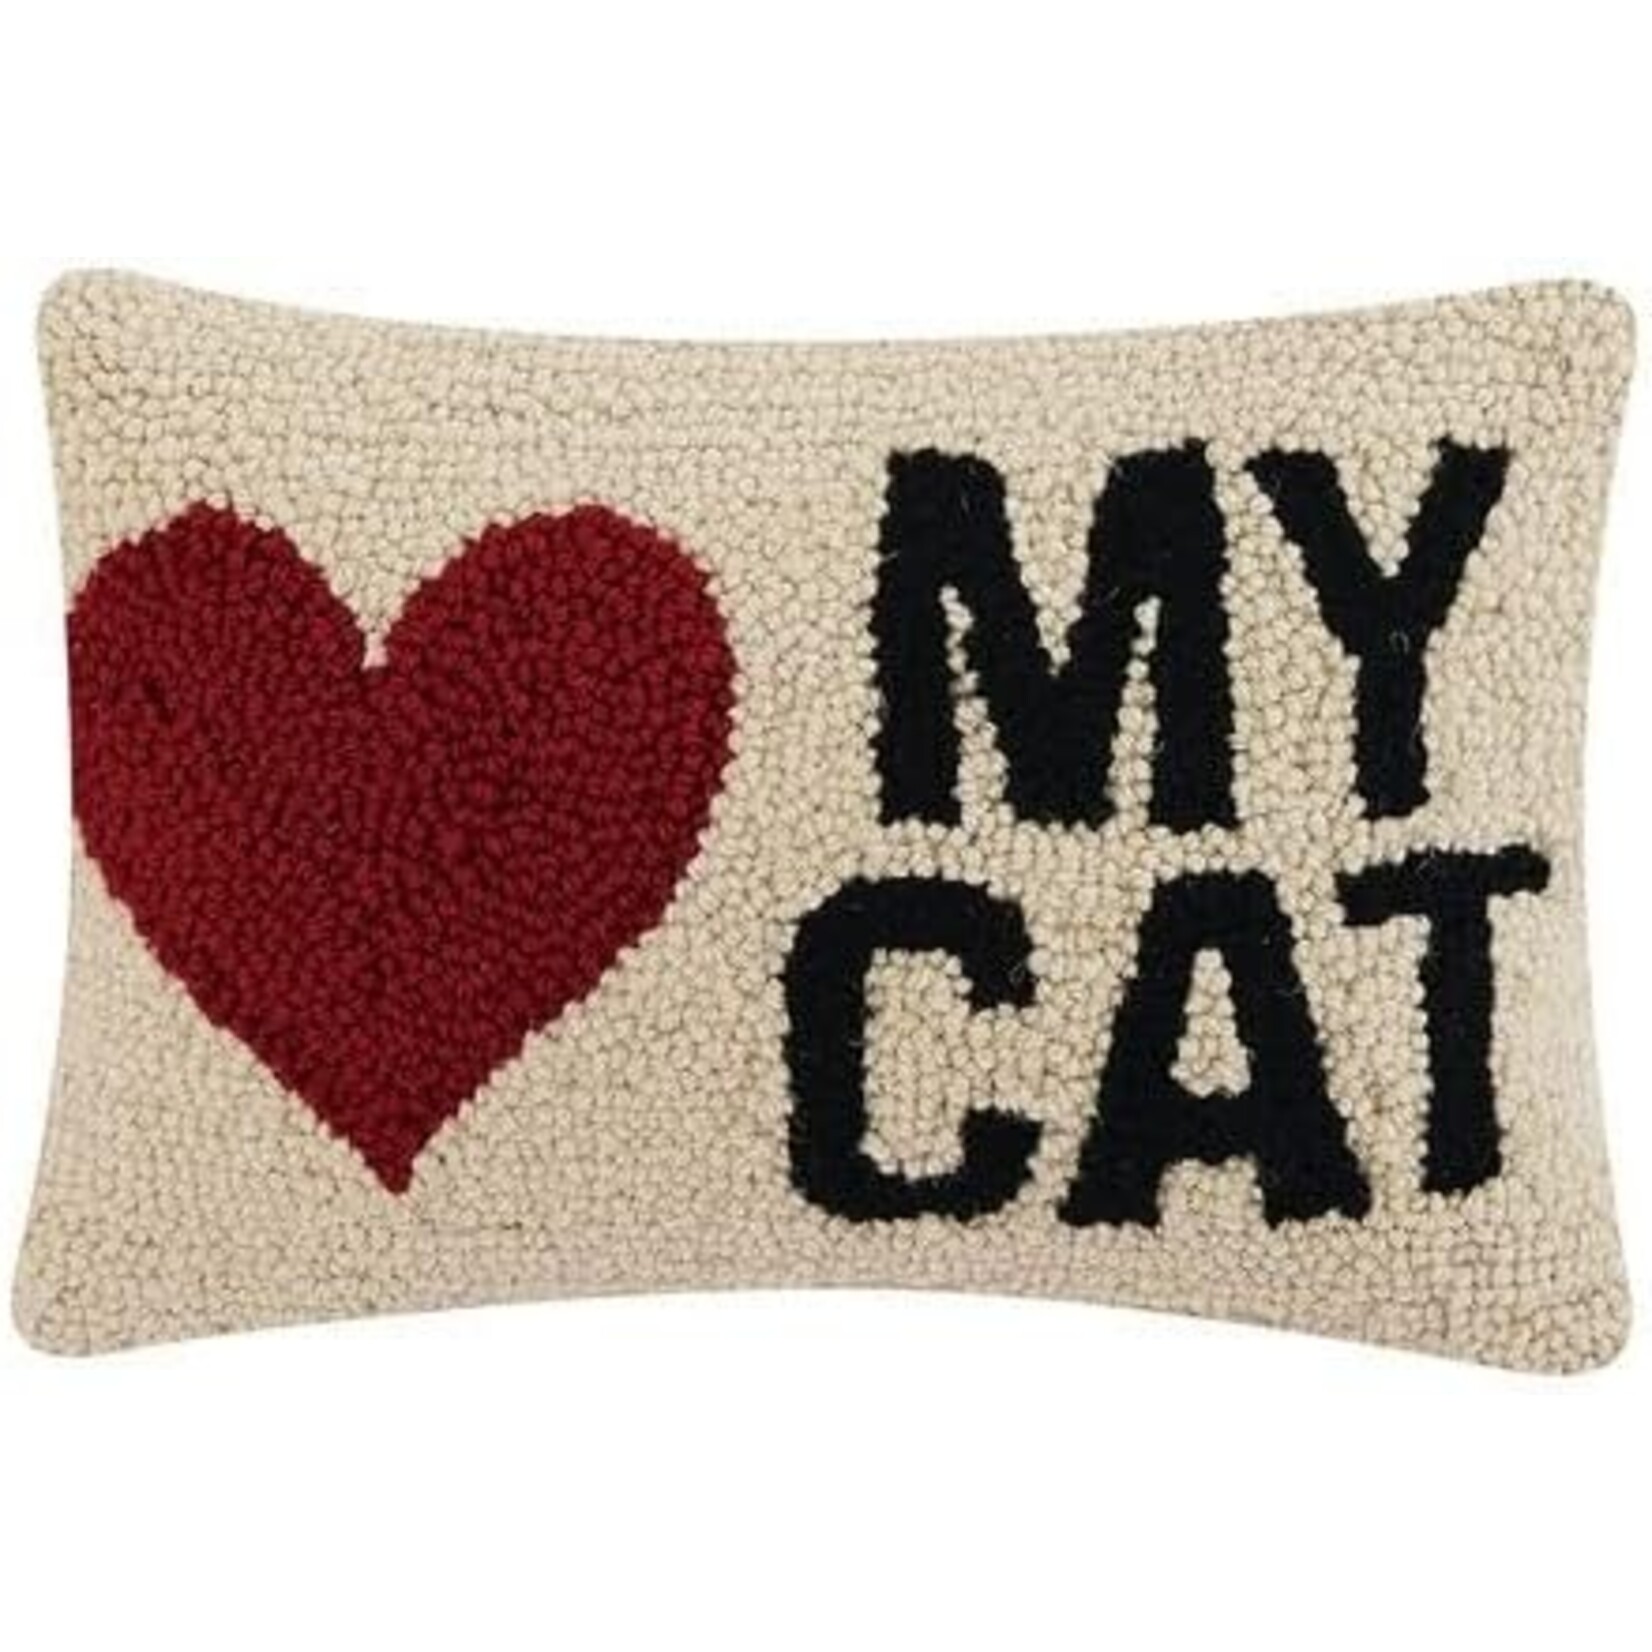 Peking Handicraft My Heart Cat Pillow.  8x12"